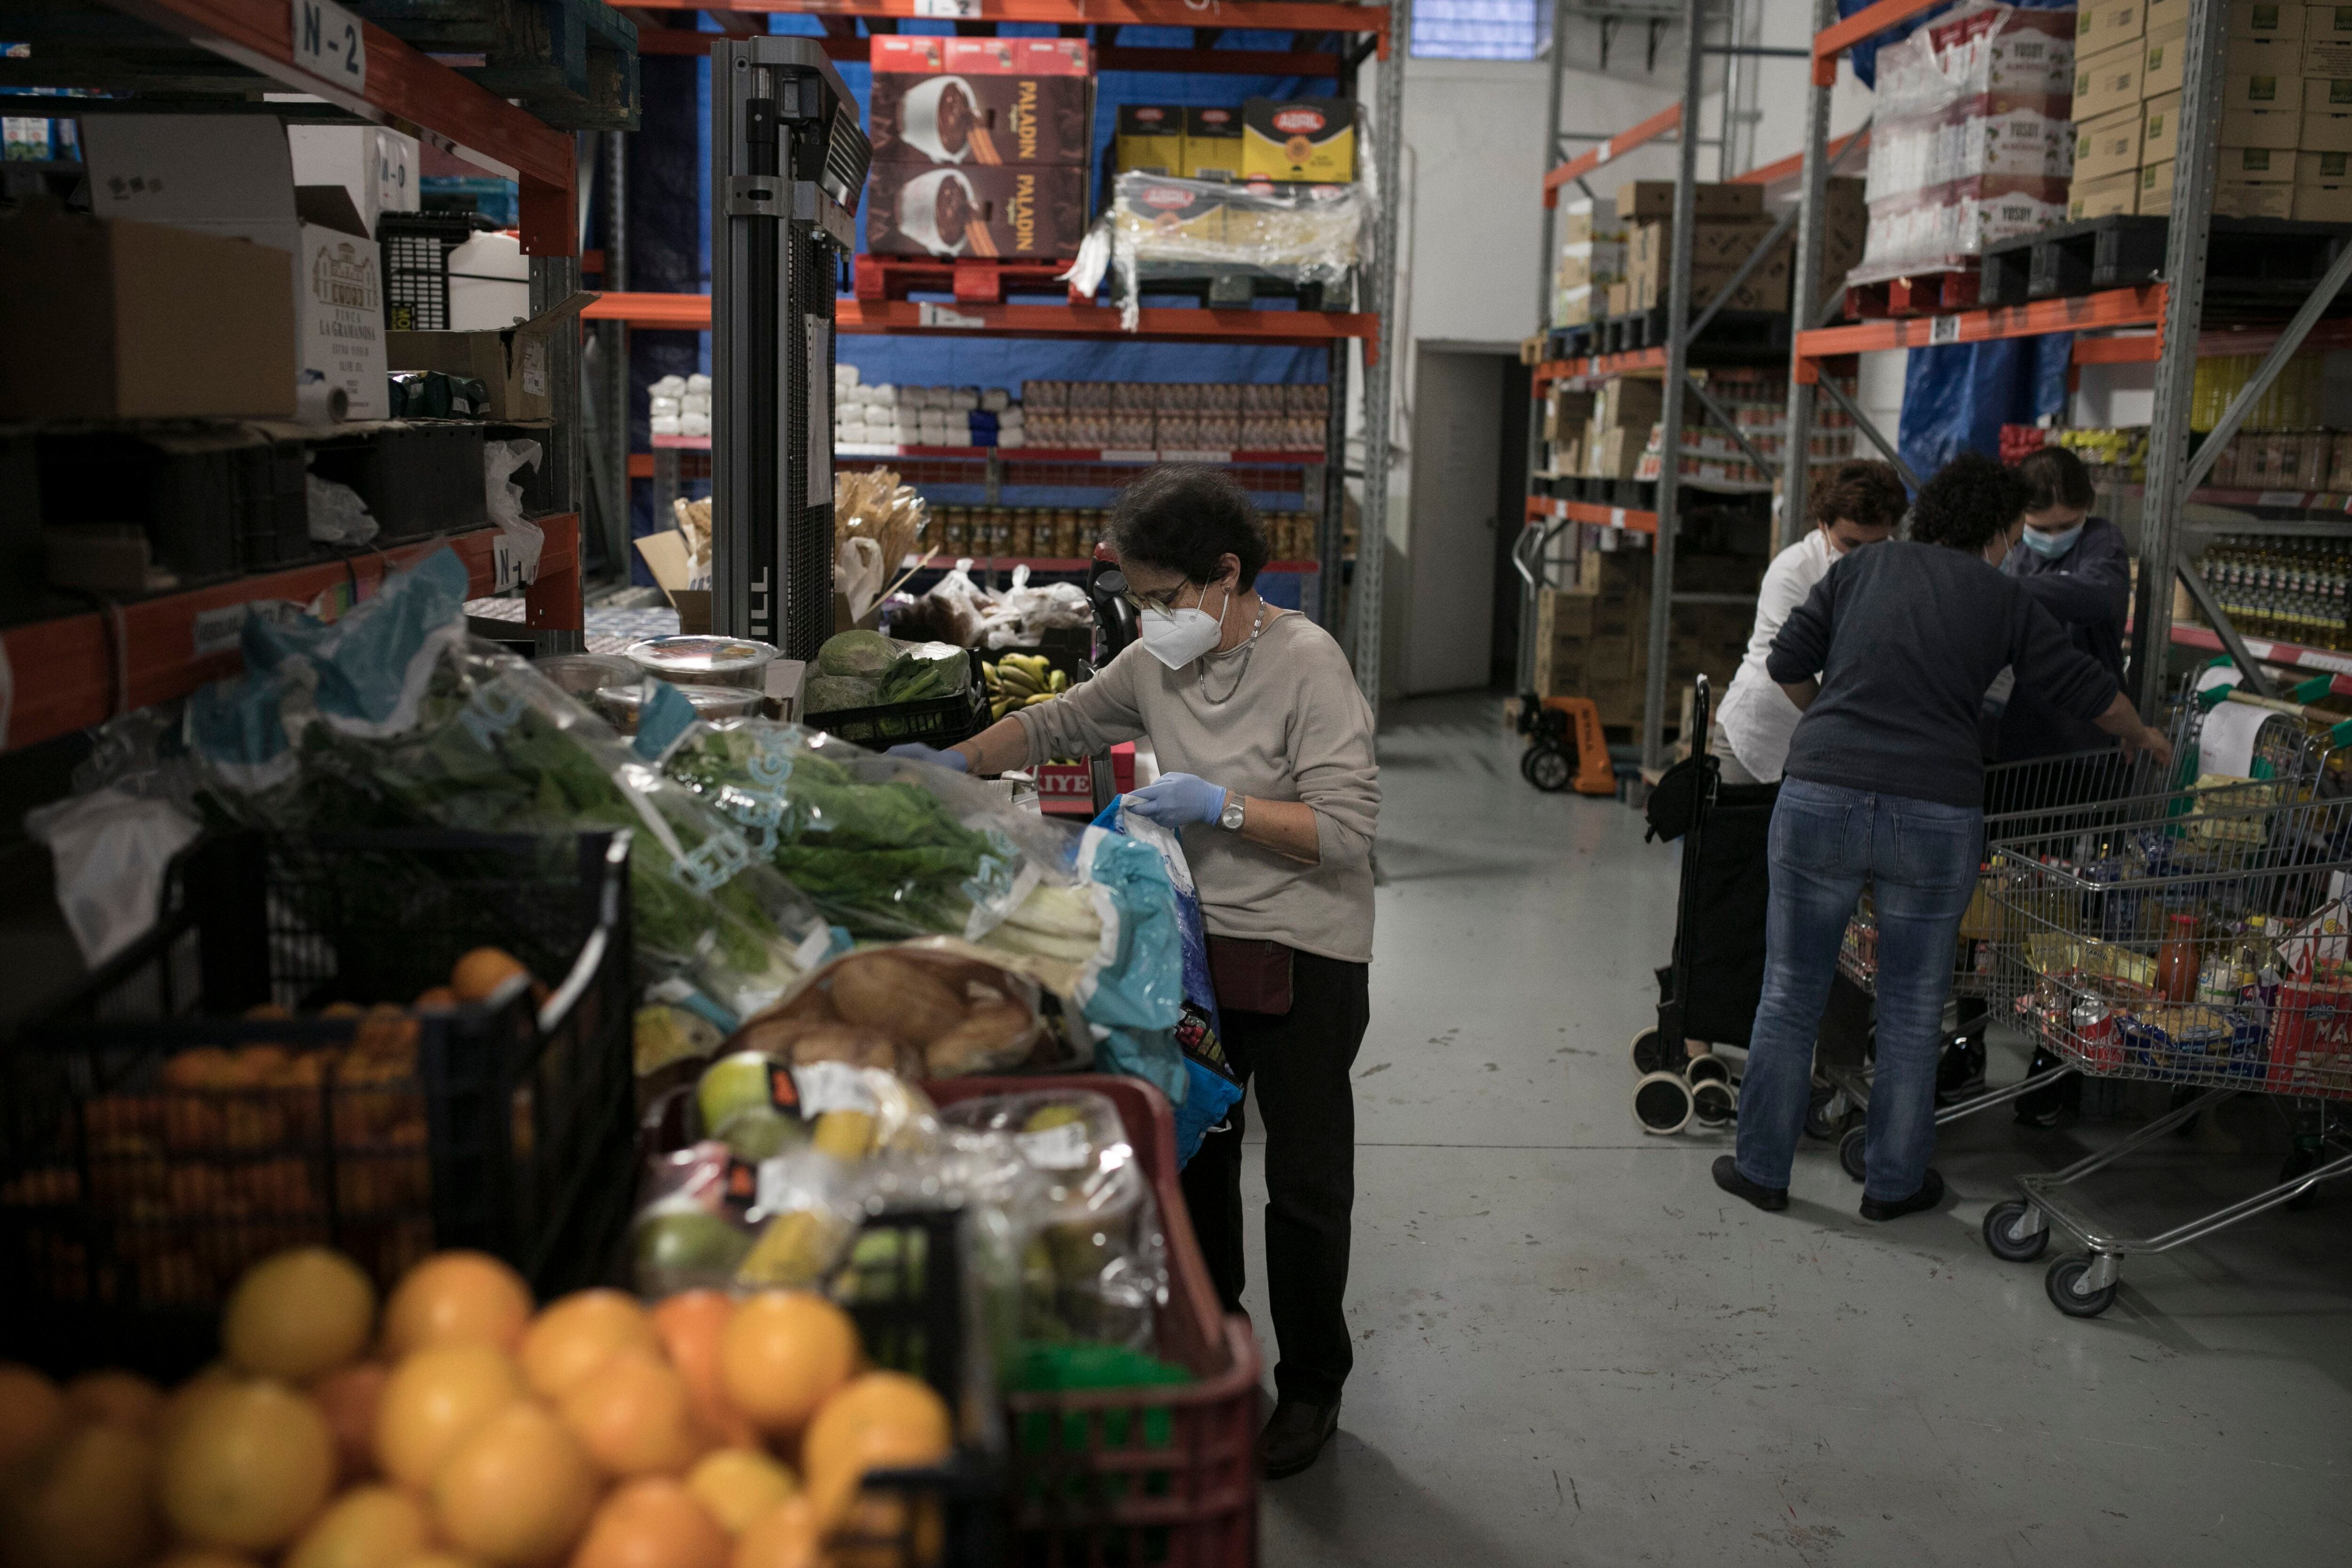 03/11/2020 - Barcelona - Reparto de comida de Caritas en el barrio del Eixample Izquierdo. En la imagen los voluntarios de Caritas preparan los lotes con la comida para los usuarios.  Foto: Massimiliano Minocri